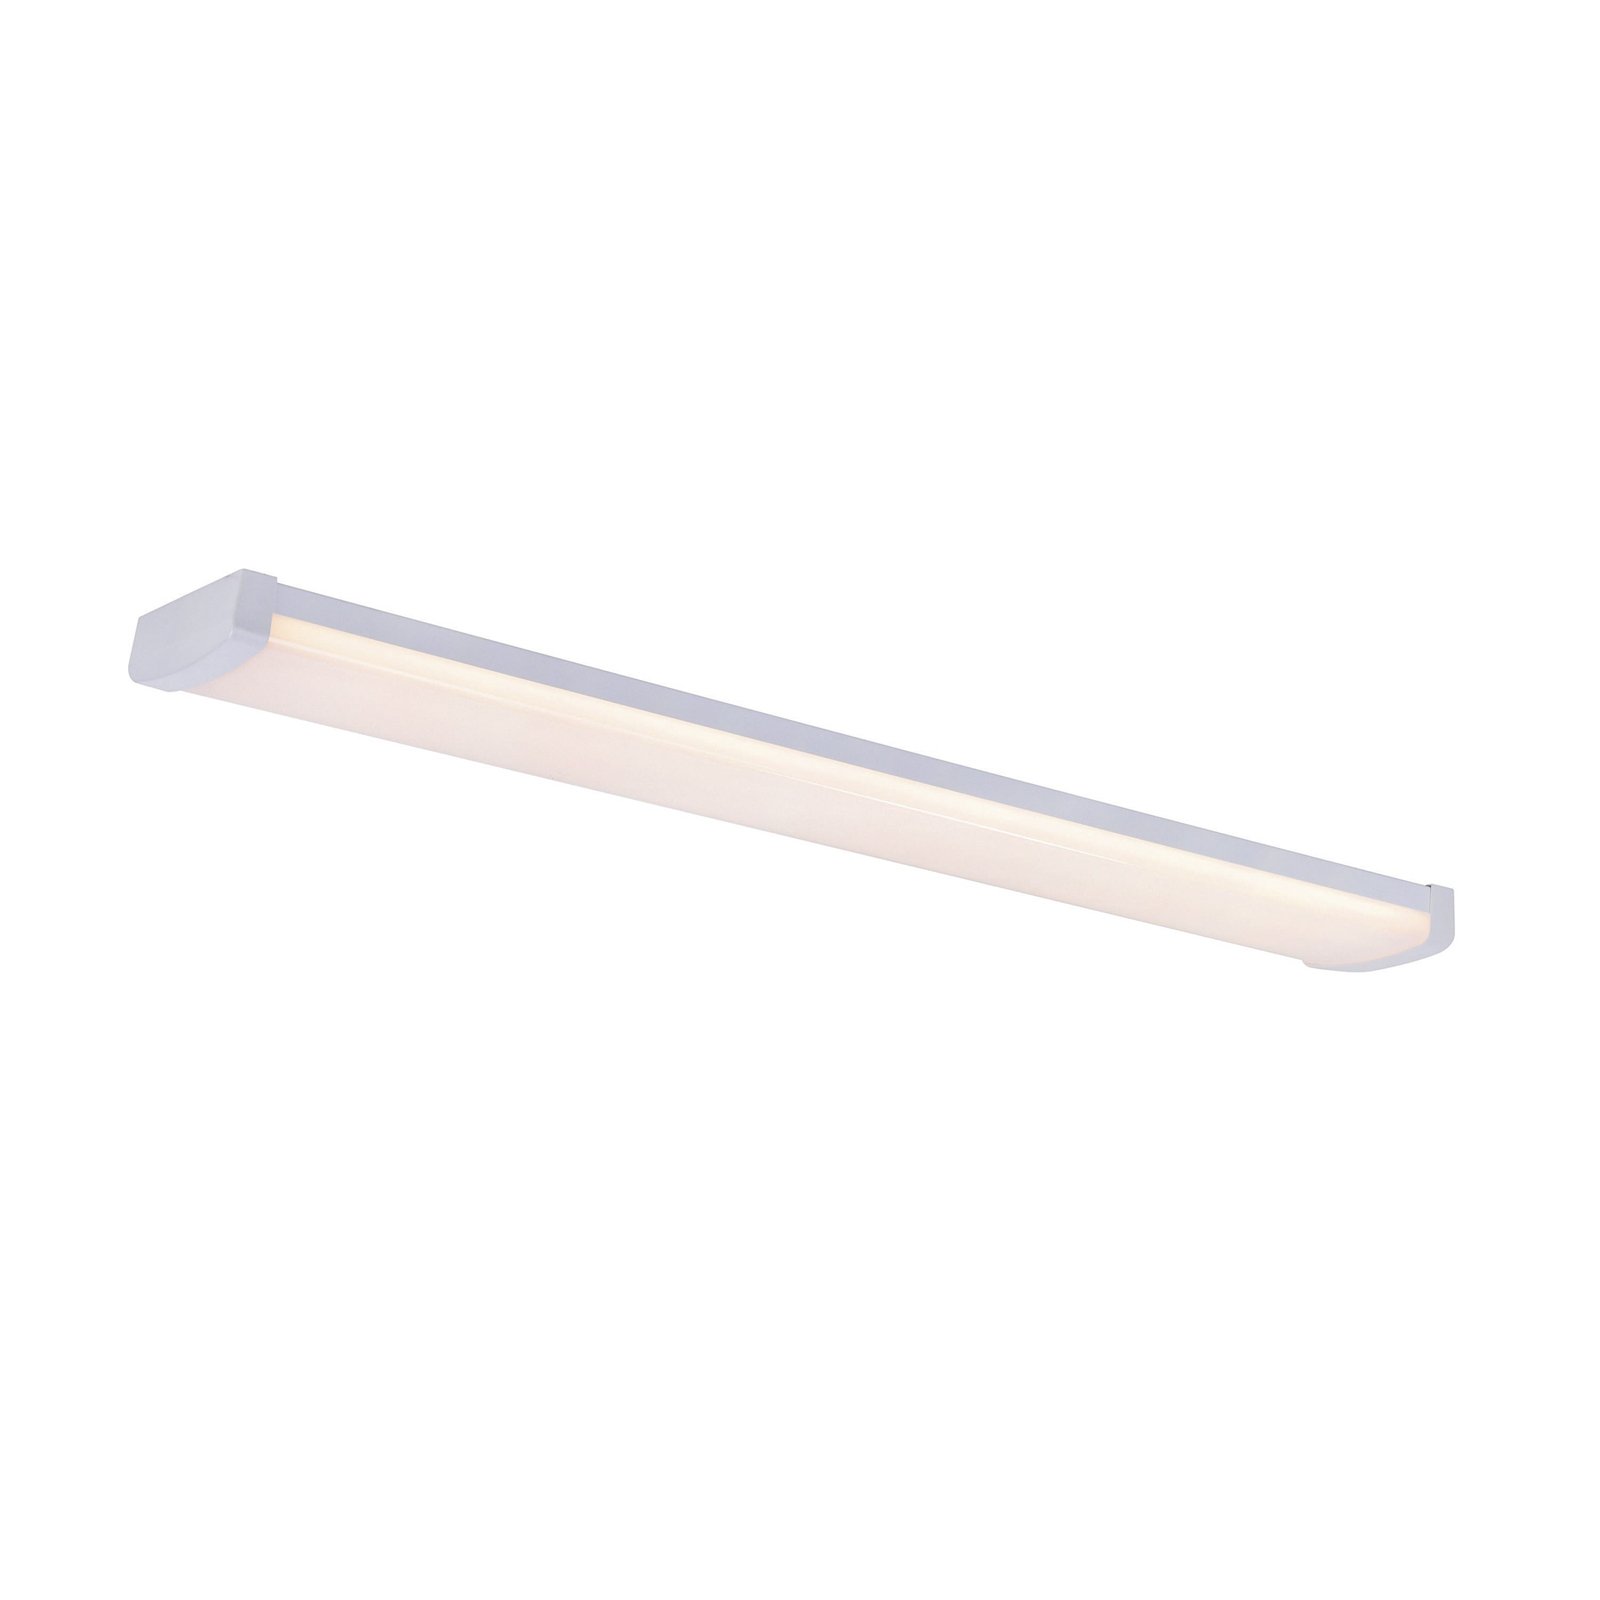 Světelný pásek LED Wilmington, délka 90,5 cm, bílý, plastový